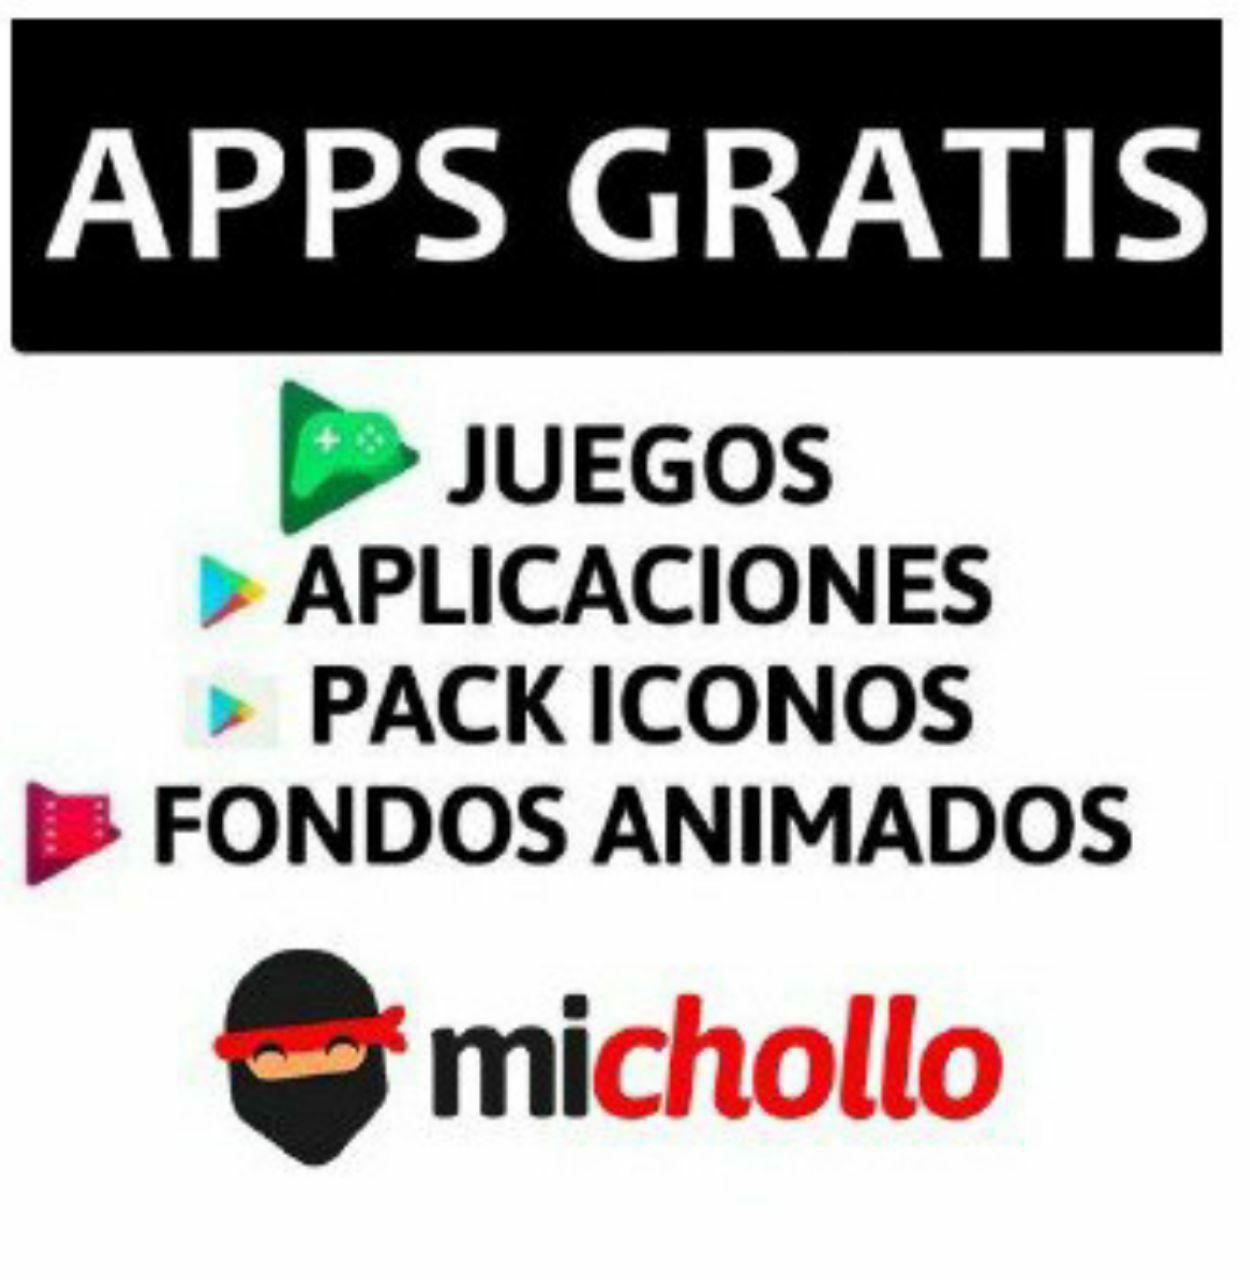 Mejores Apps y Juegos GRATIS para Iphone y Android